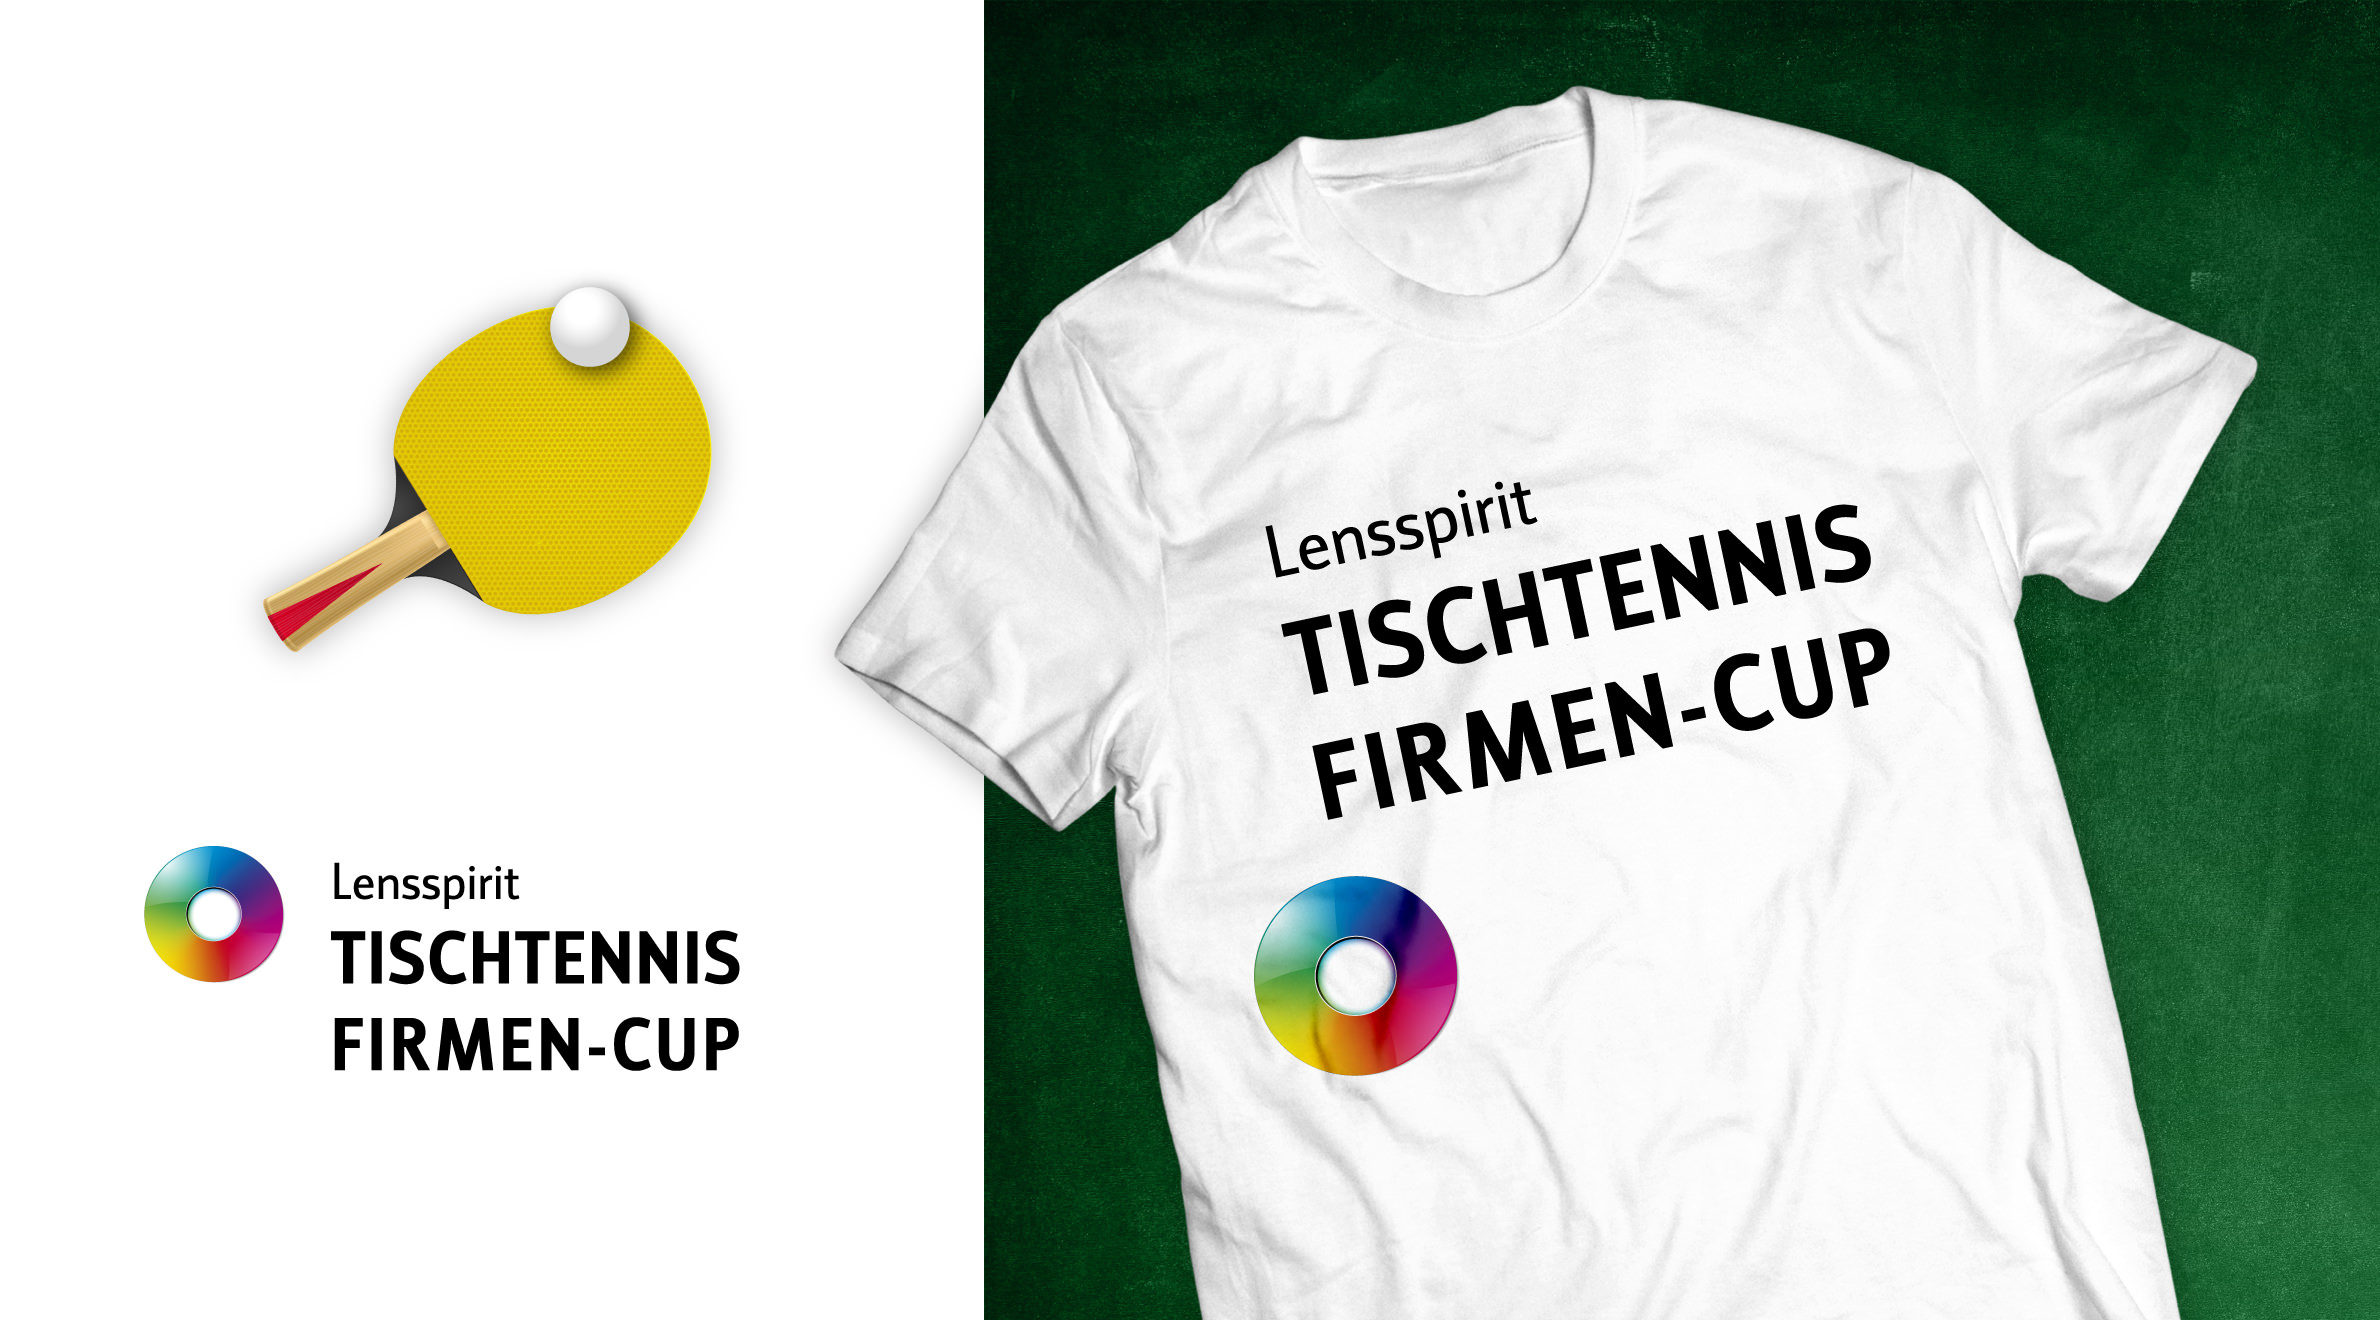 Lensspirit - Tischtennis Firmen-Cup, Logo